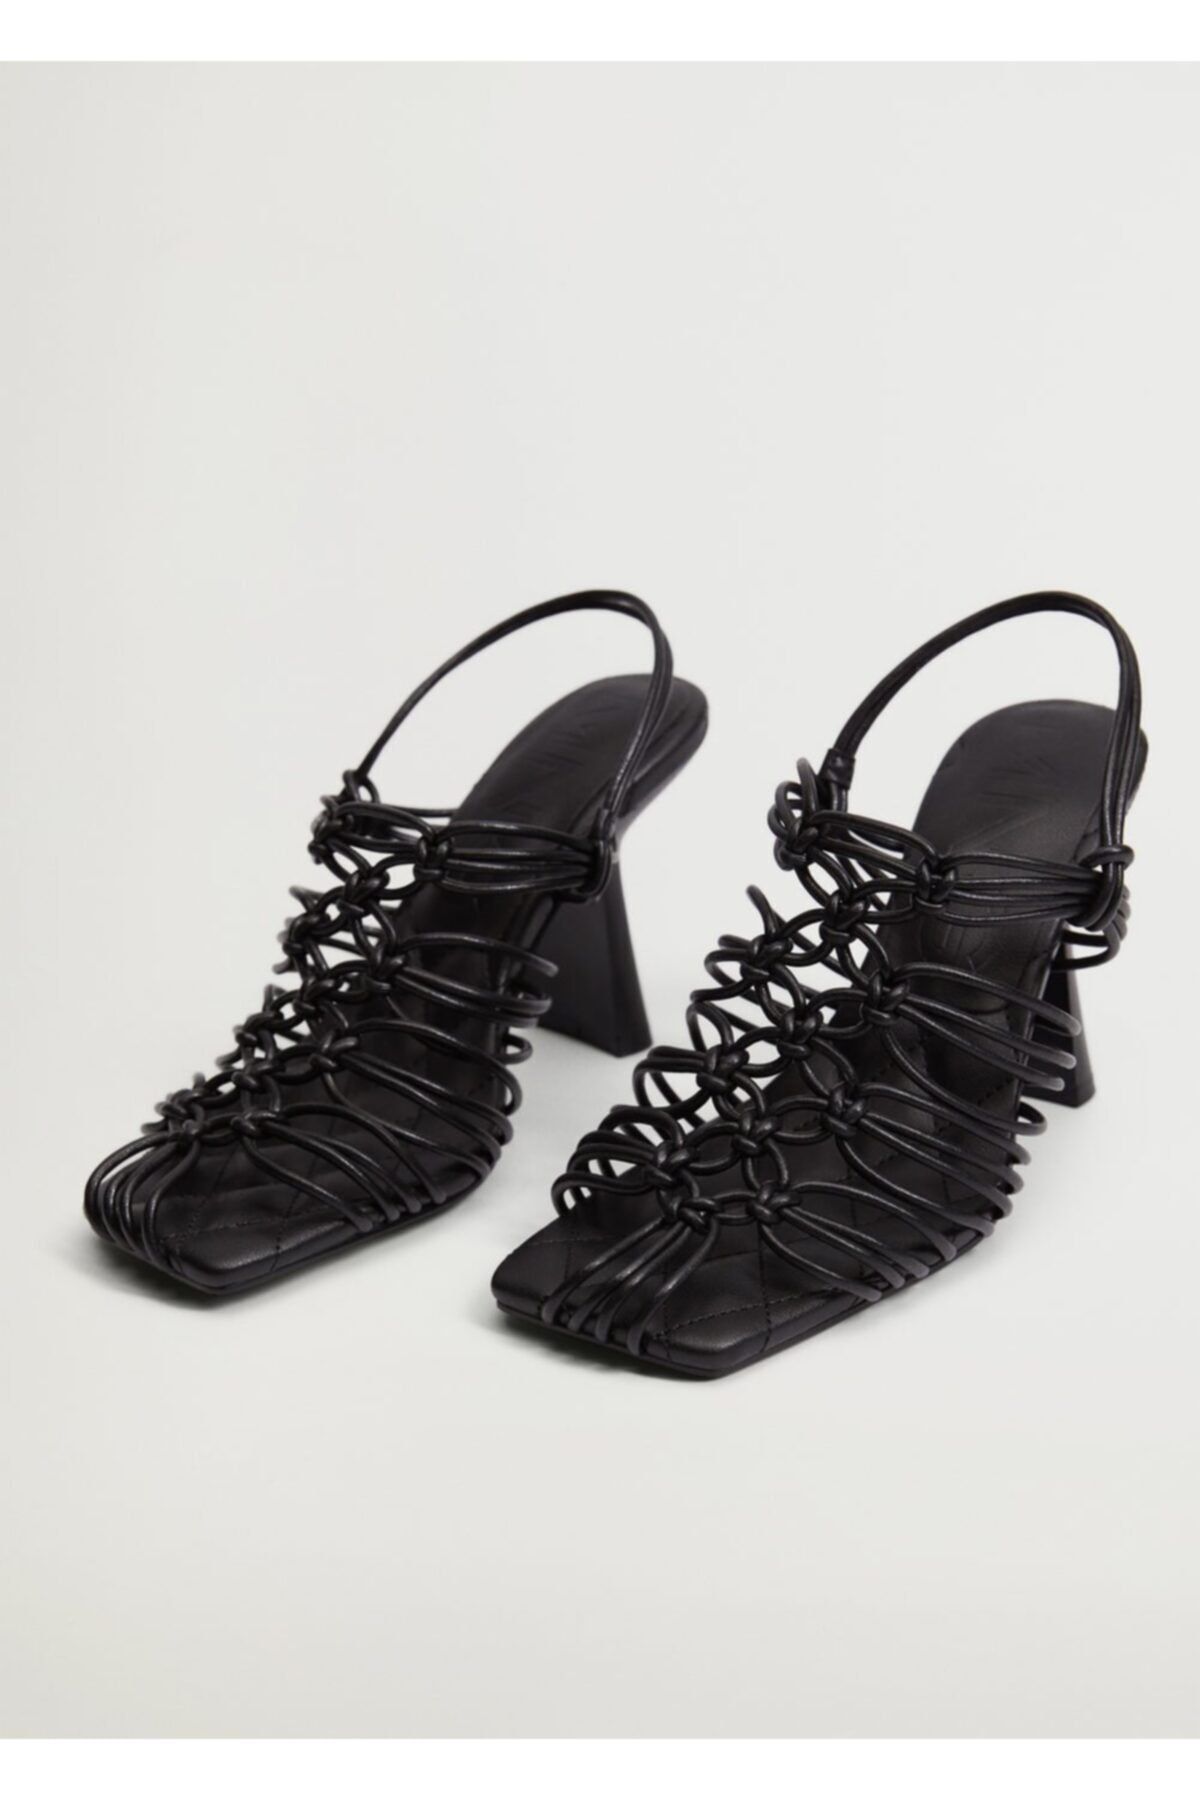 MANGO Kadın Siyah Düğümlü Topuklu Sandalet